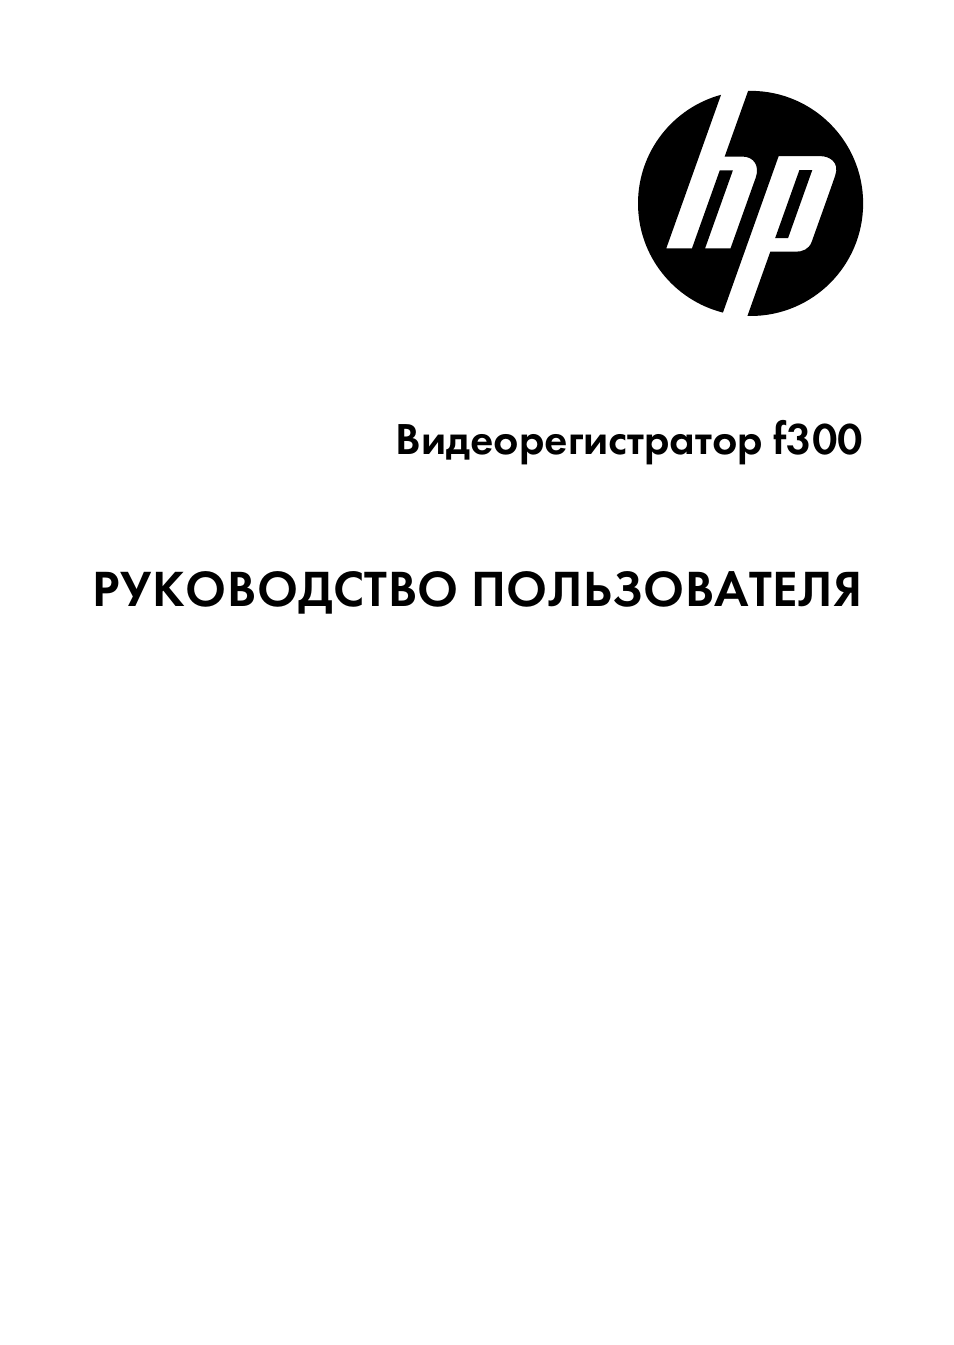 Инструкция по эксплуатации HP Автомобильная цифровая видеокамера HP f300 | 28 страниц